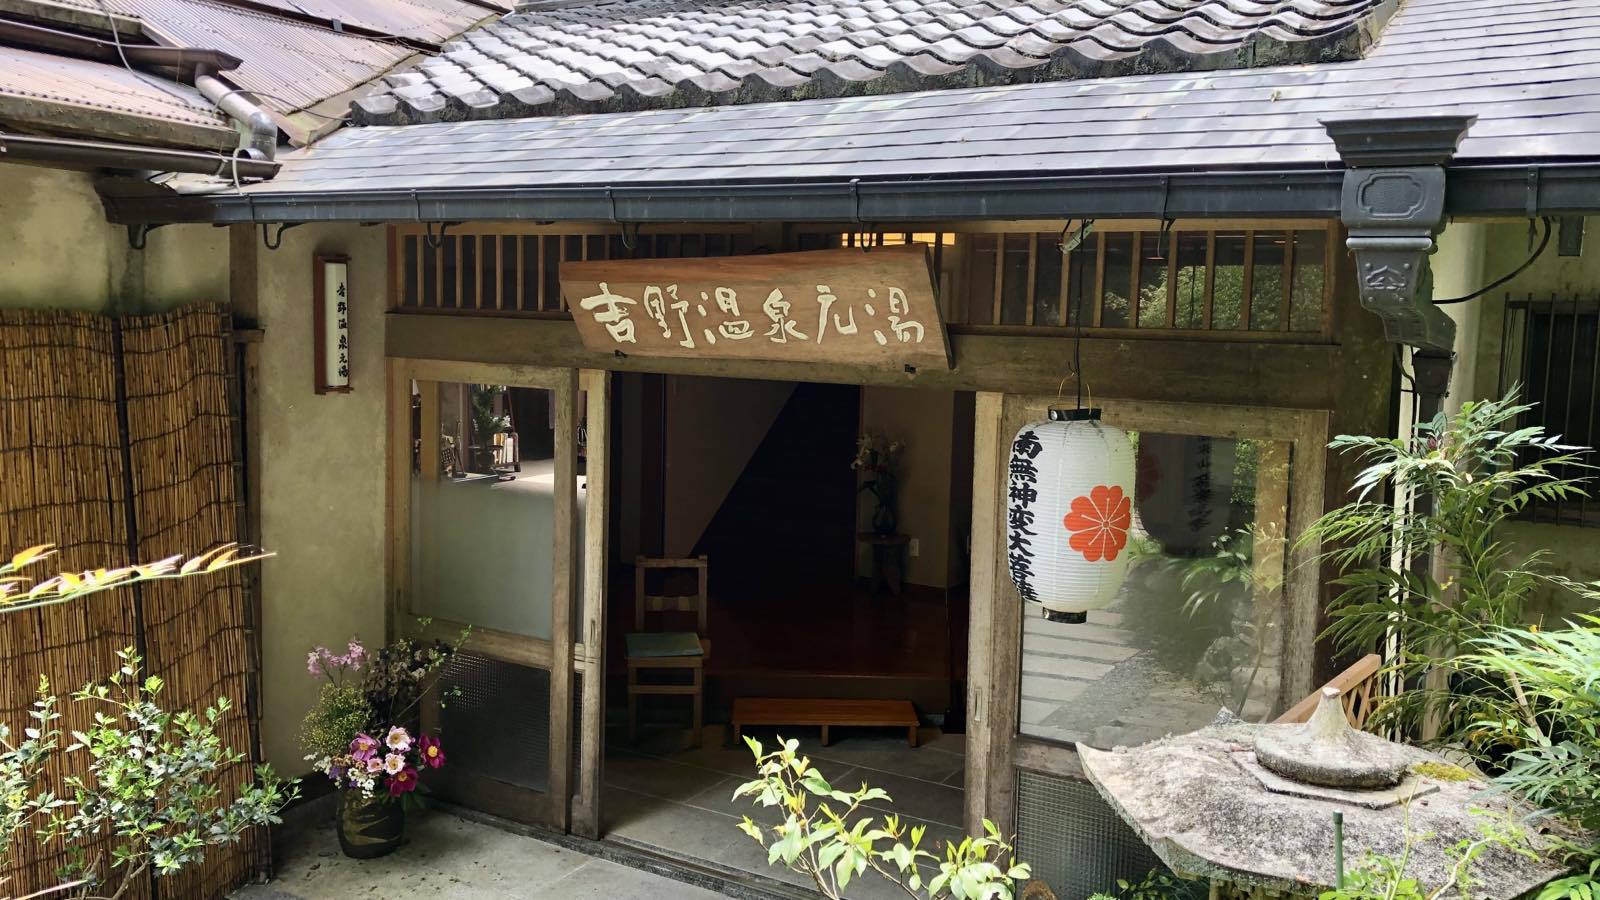 吉野山で花見と神社巡り。アクセス便利な宿